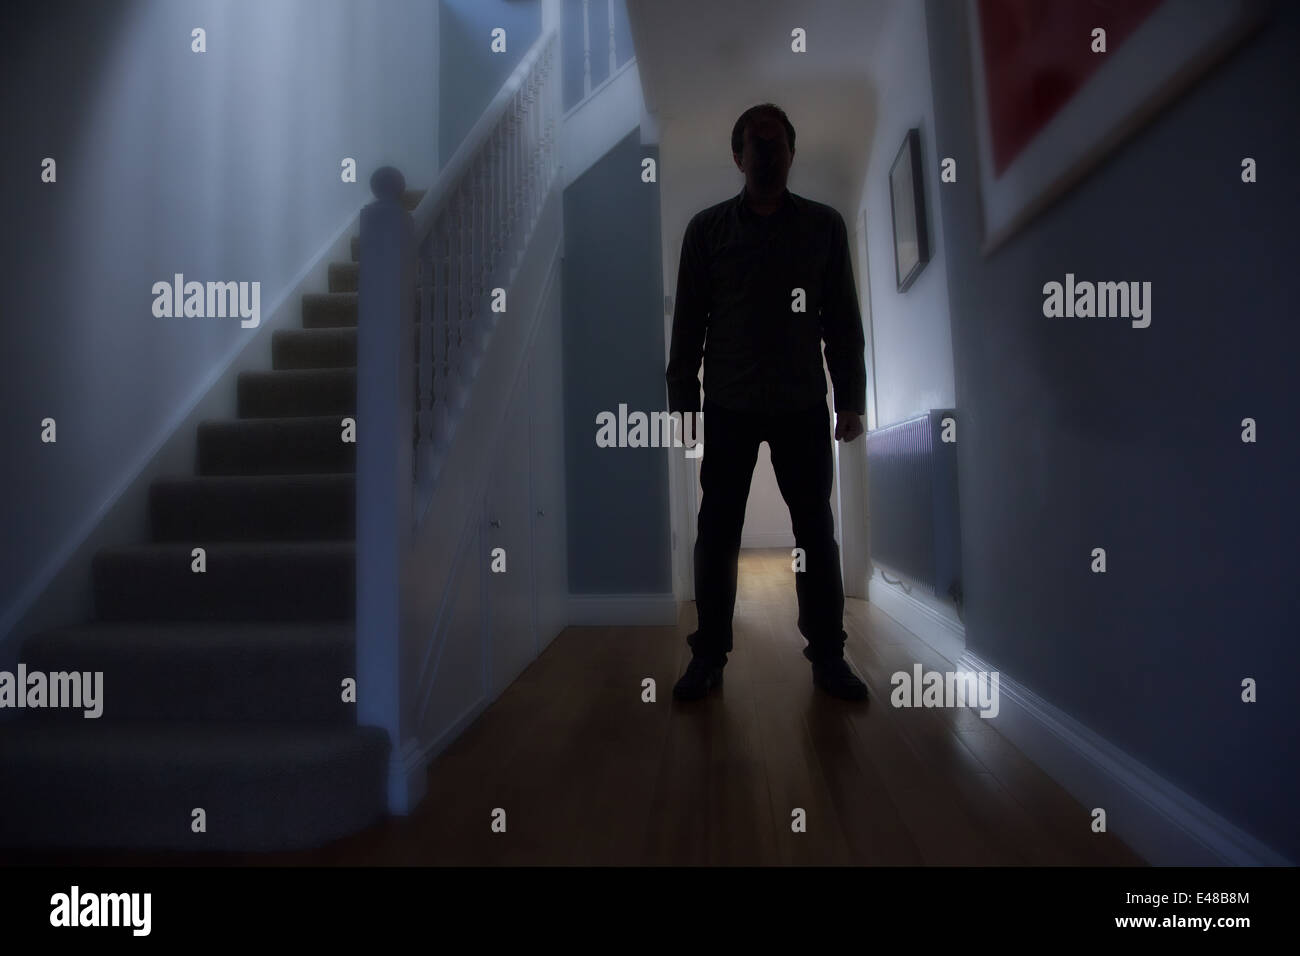 Silueta de un hombre de pie en un pasillo de una casa con la escalera a su derecha. Foto de stock